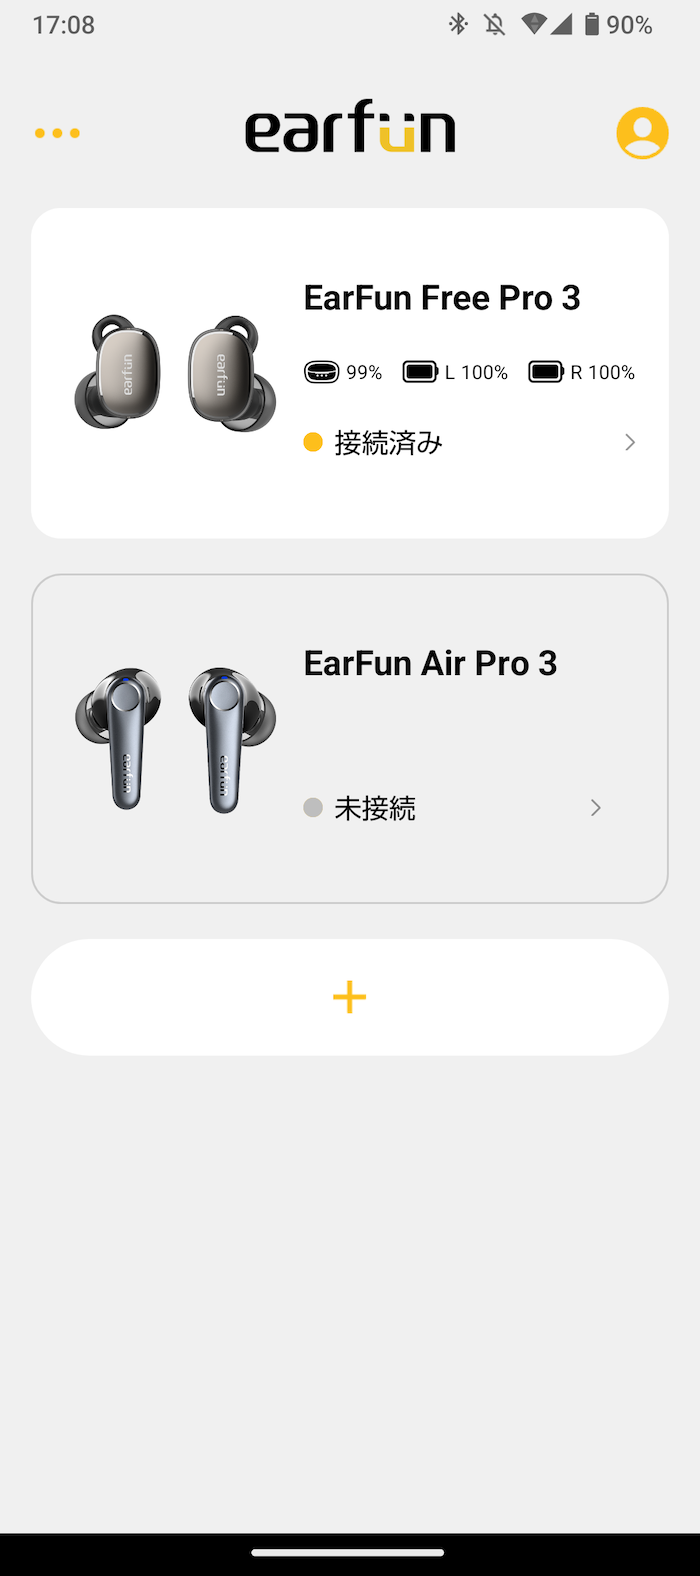 EarFun Free Pro 3のコンパニオンアプリEarFun Audio